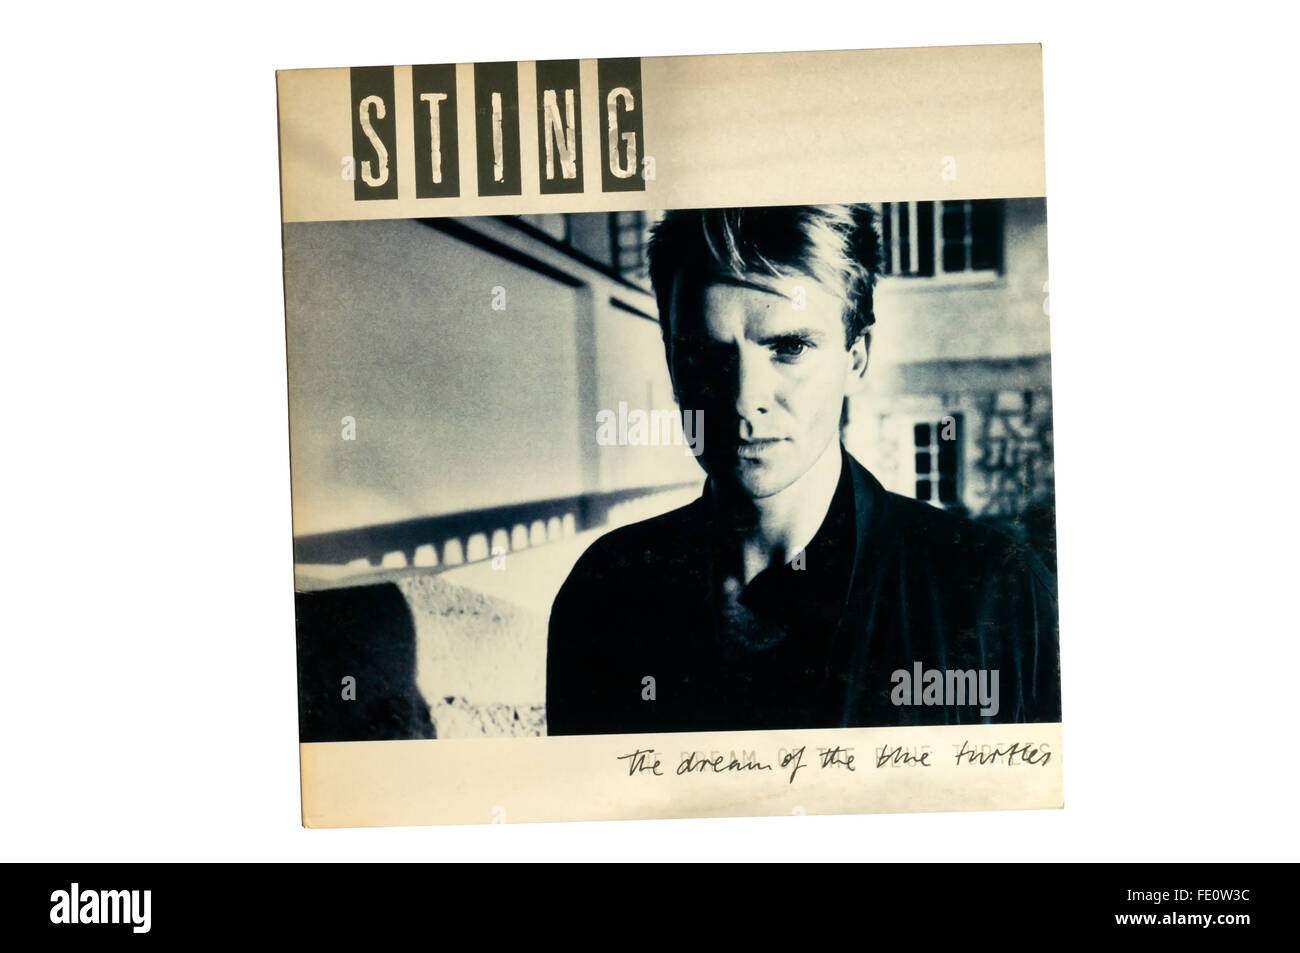 Le rêve de la tortue bleue est le premier album solo de chanteur-compositeur pop britannique Sting, sorti aux États-Unis le 1 juin 1985 Banque D'Images